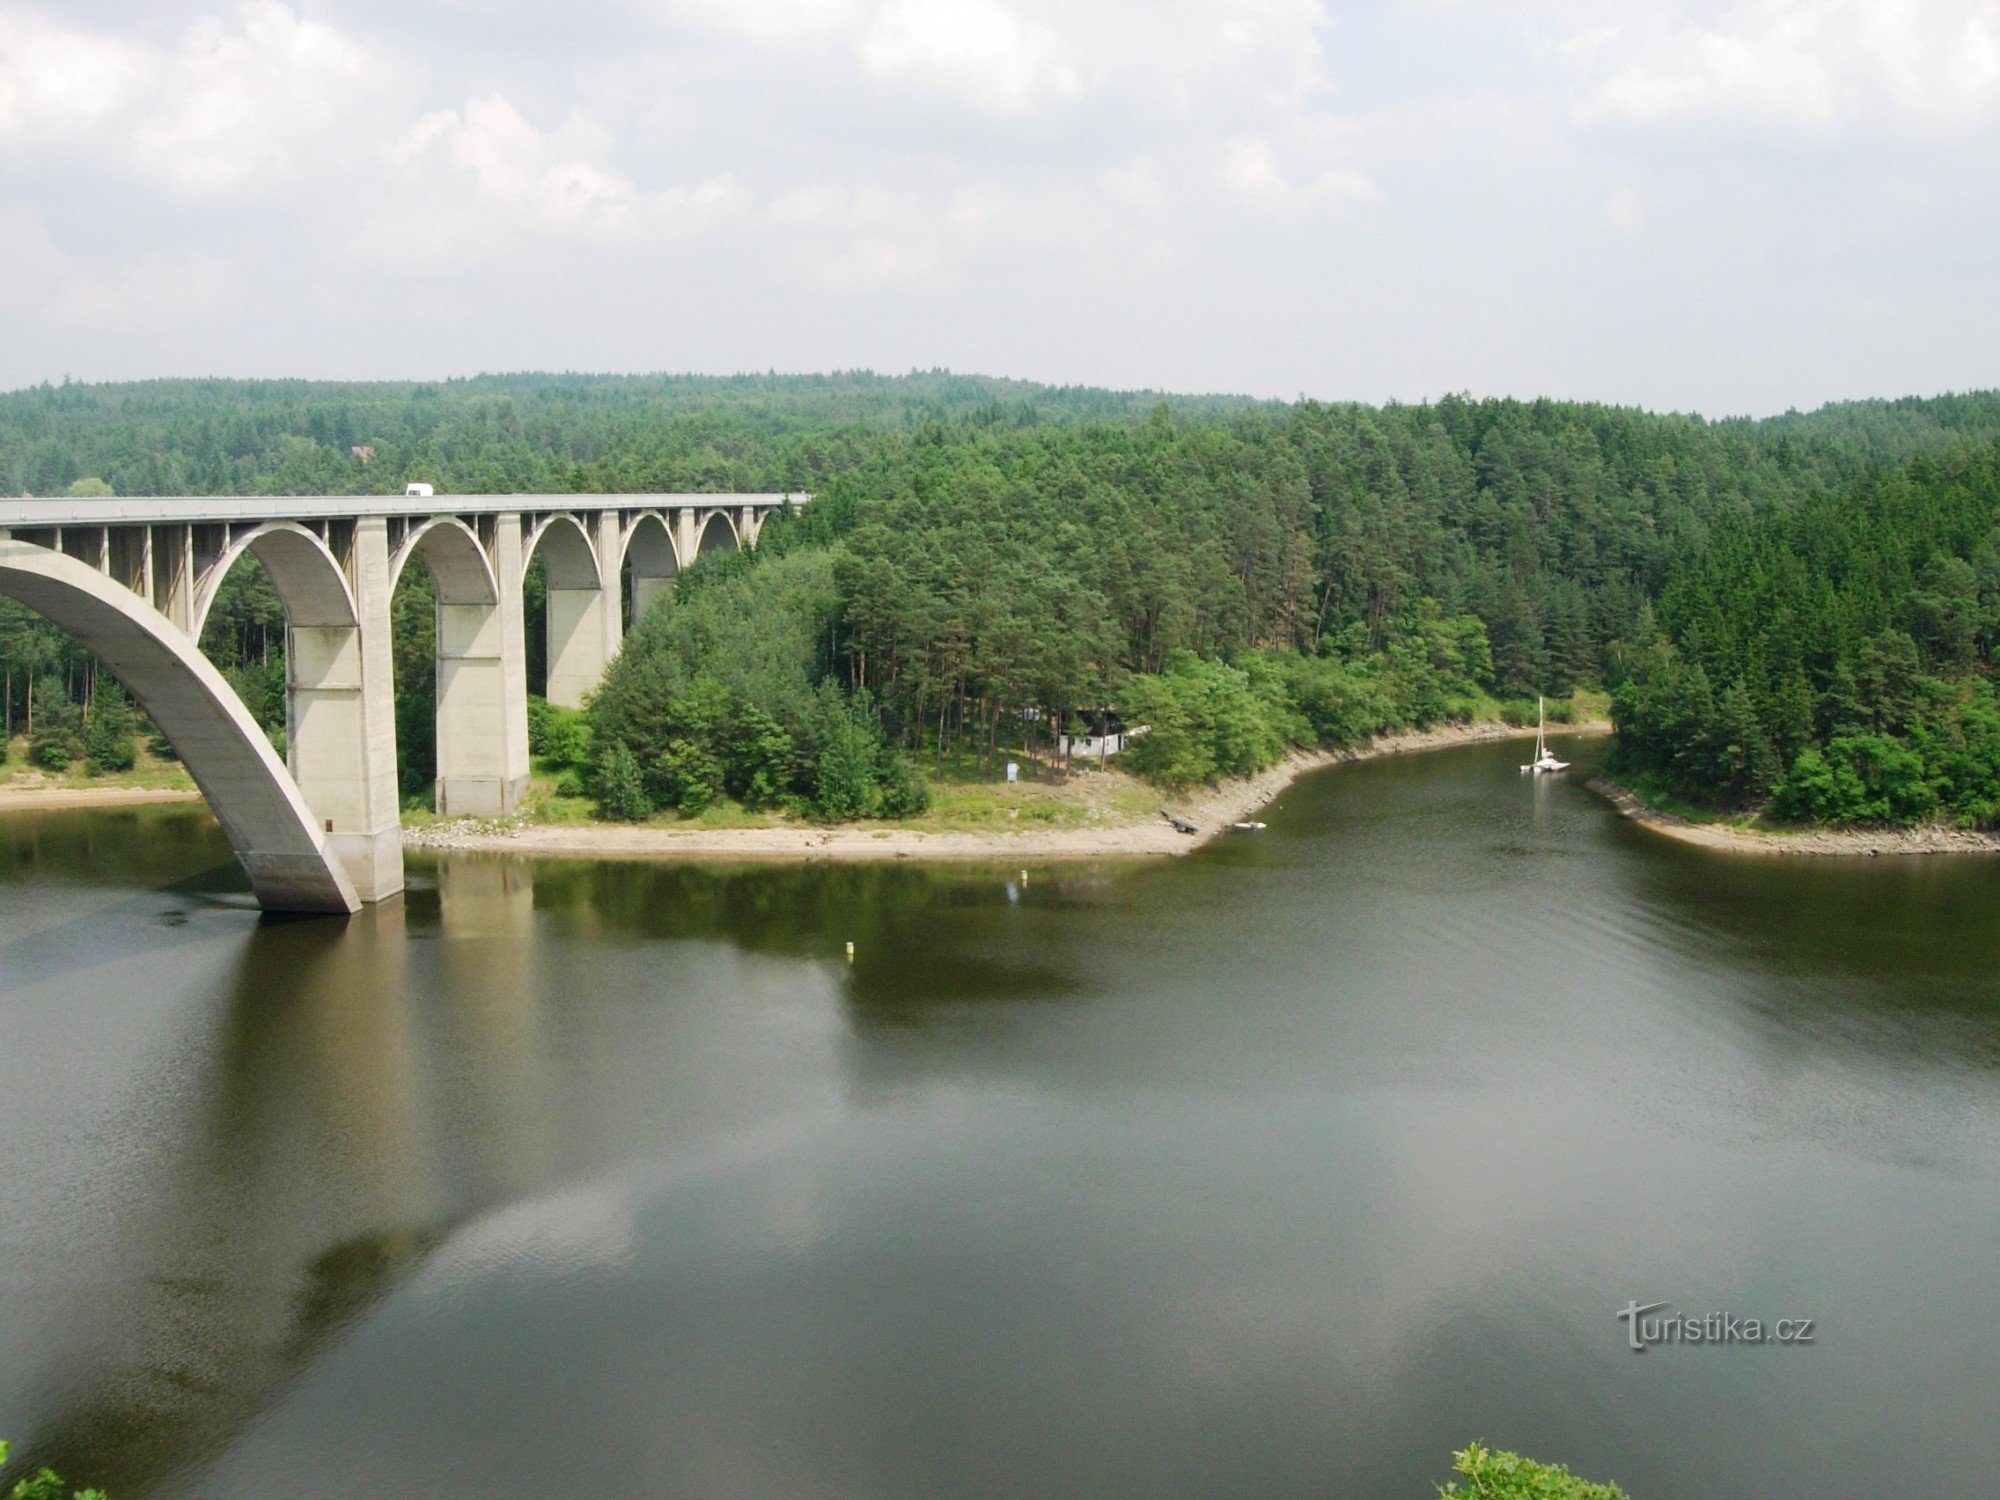 Podolský bridge and bay on Budovické potok